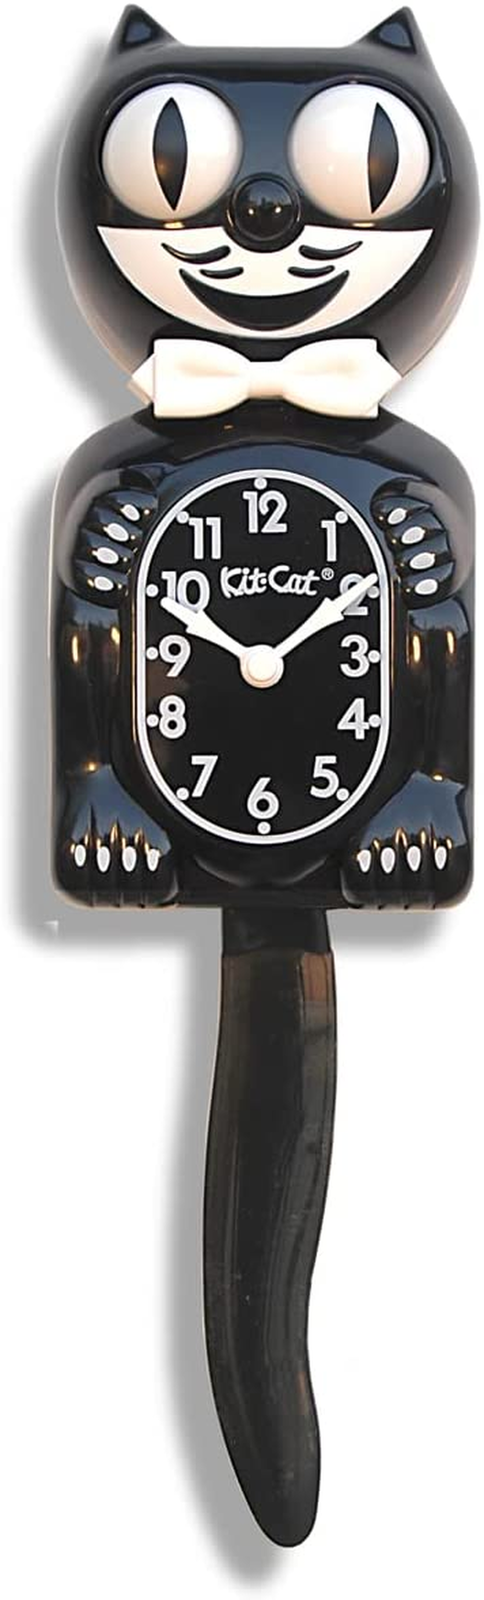 Kit-Cat Klock, Orologio Classico Nero